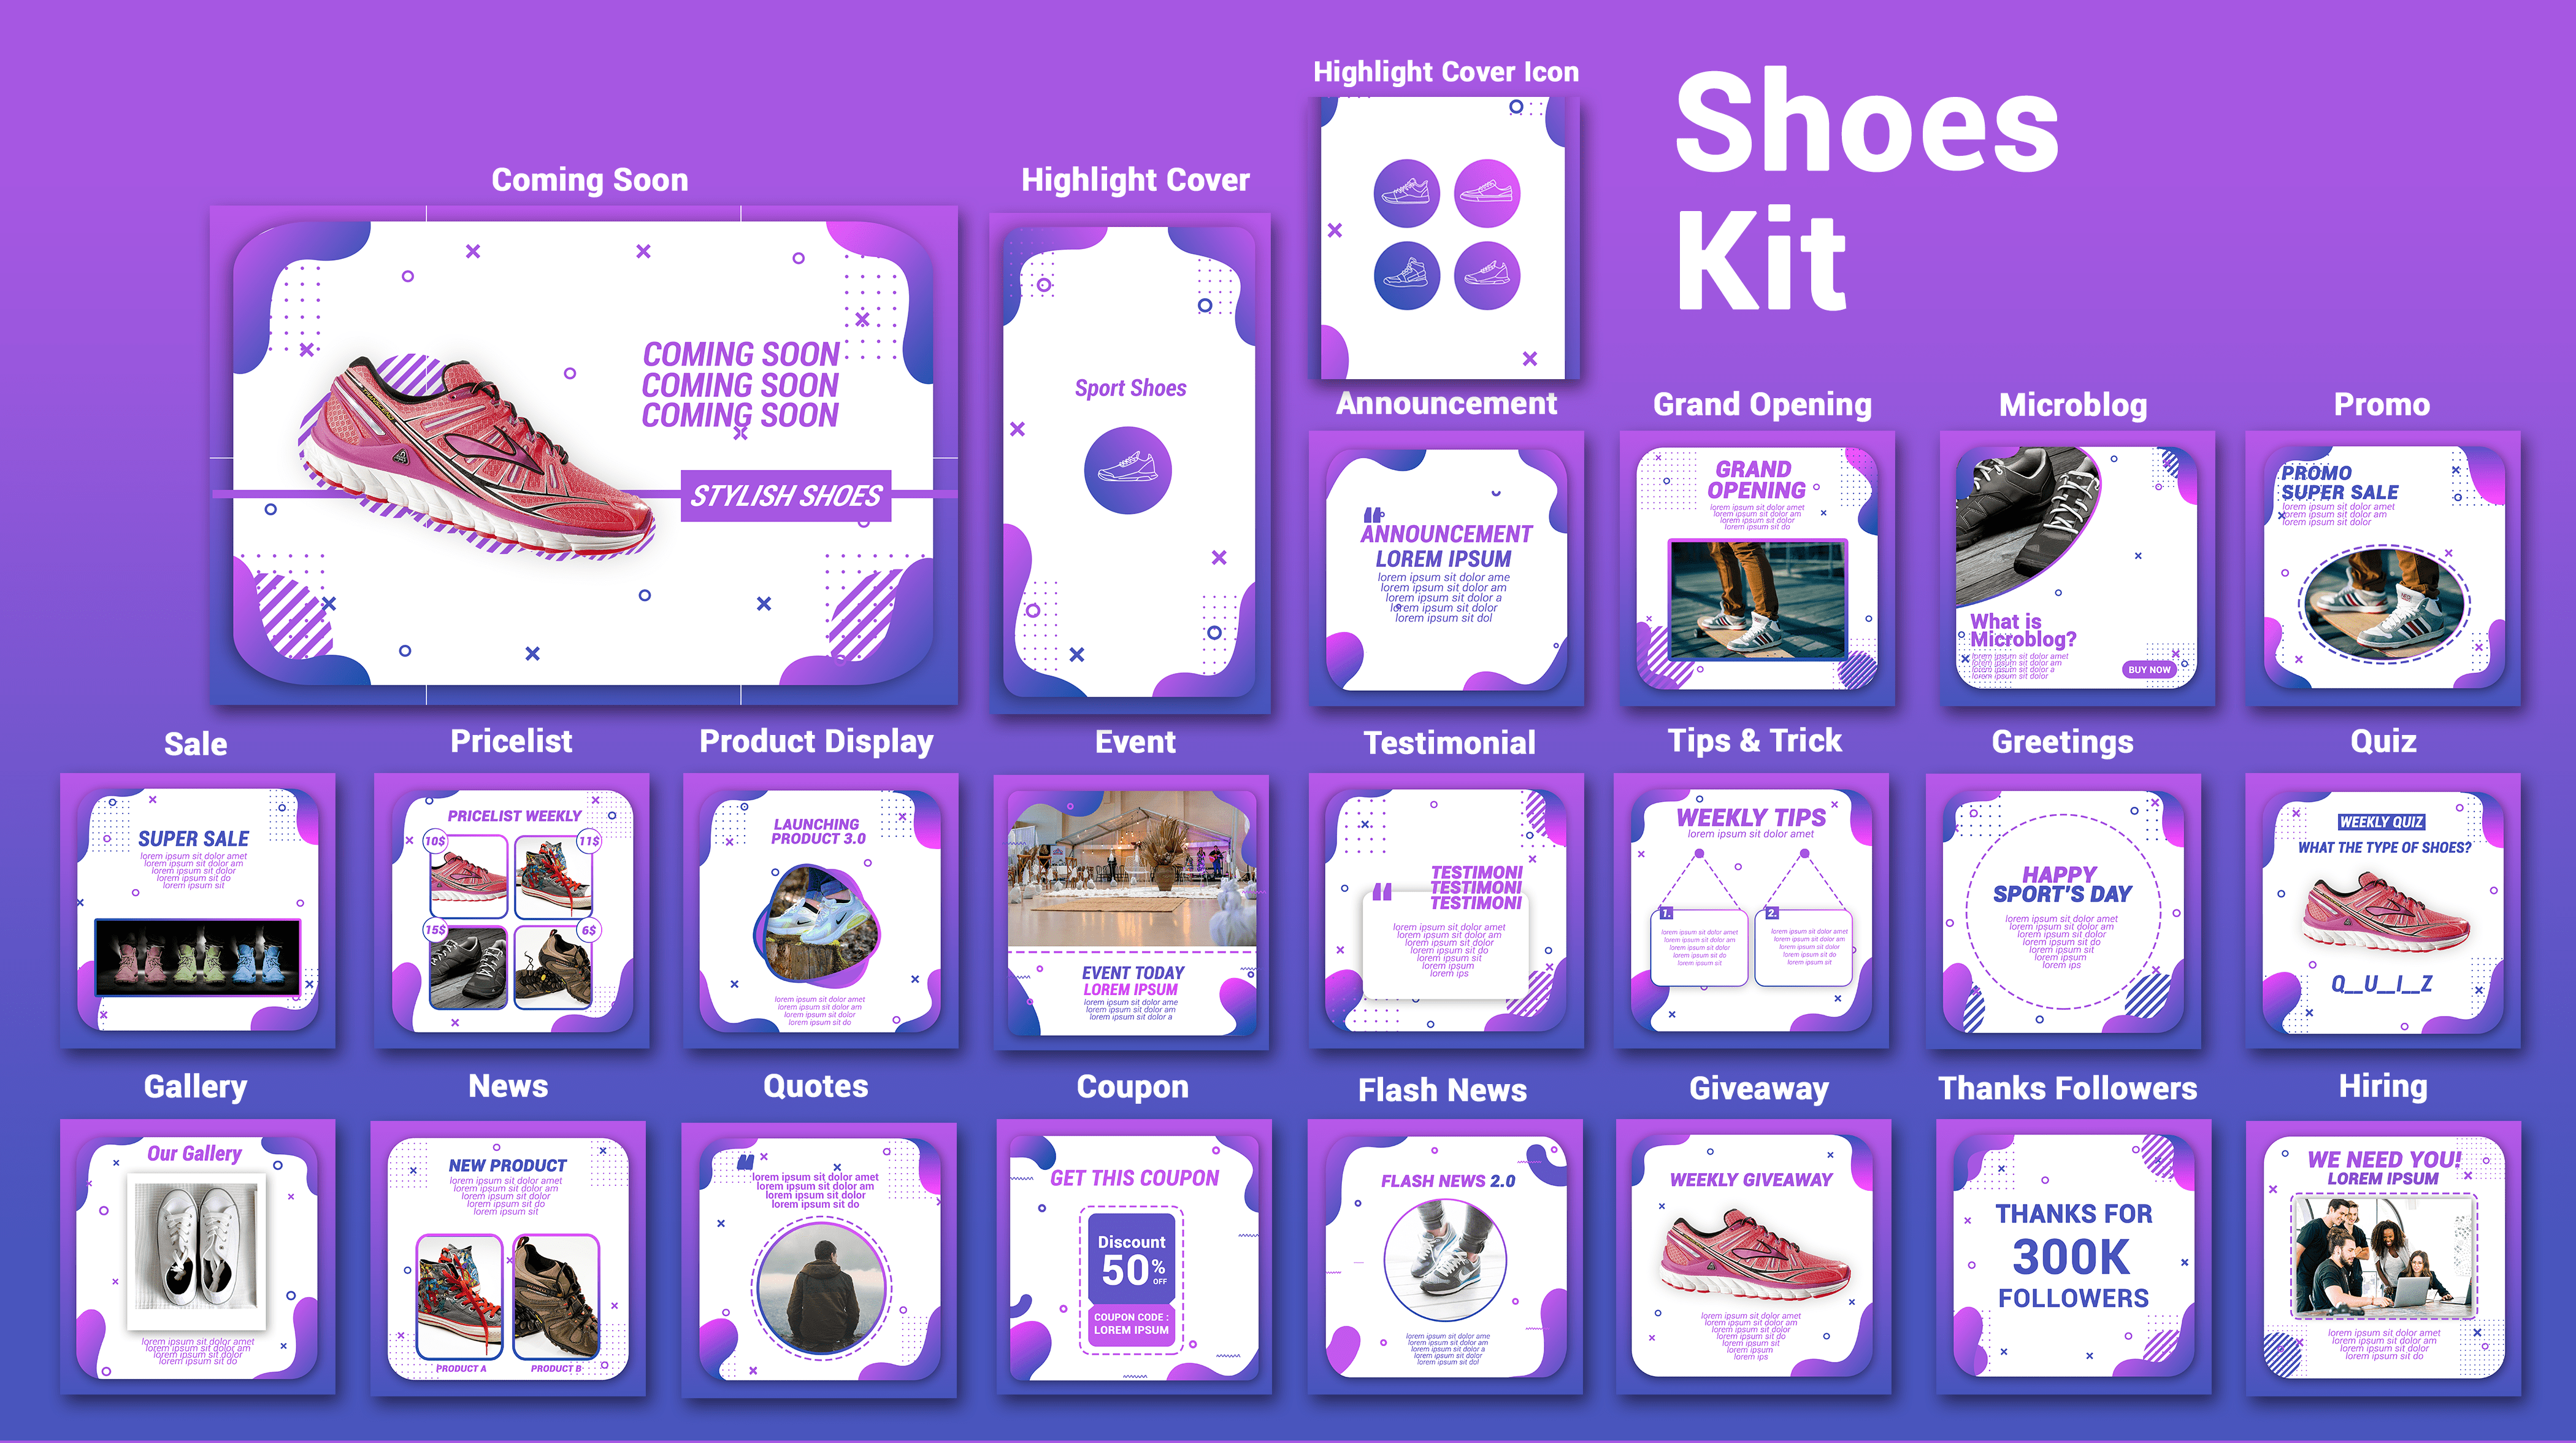 Shoes Kit e1605964479674 1